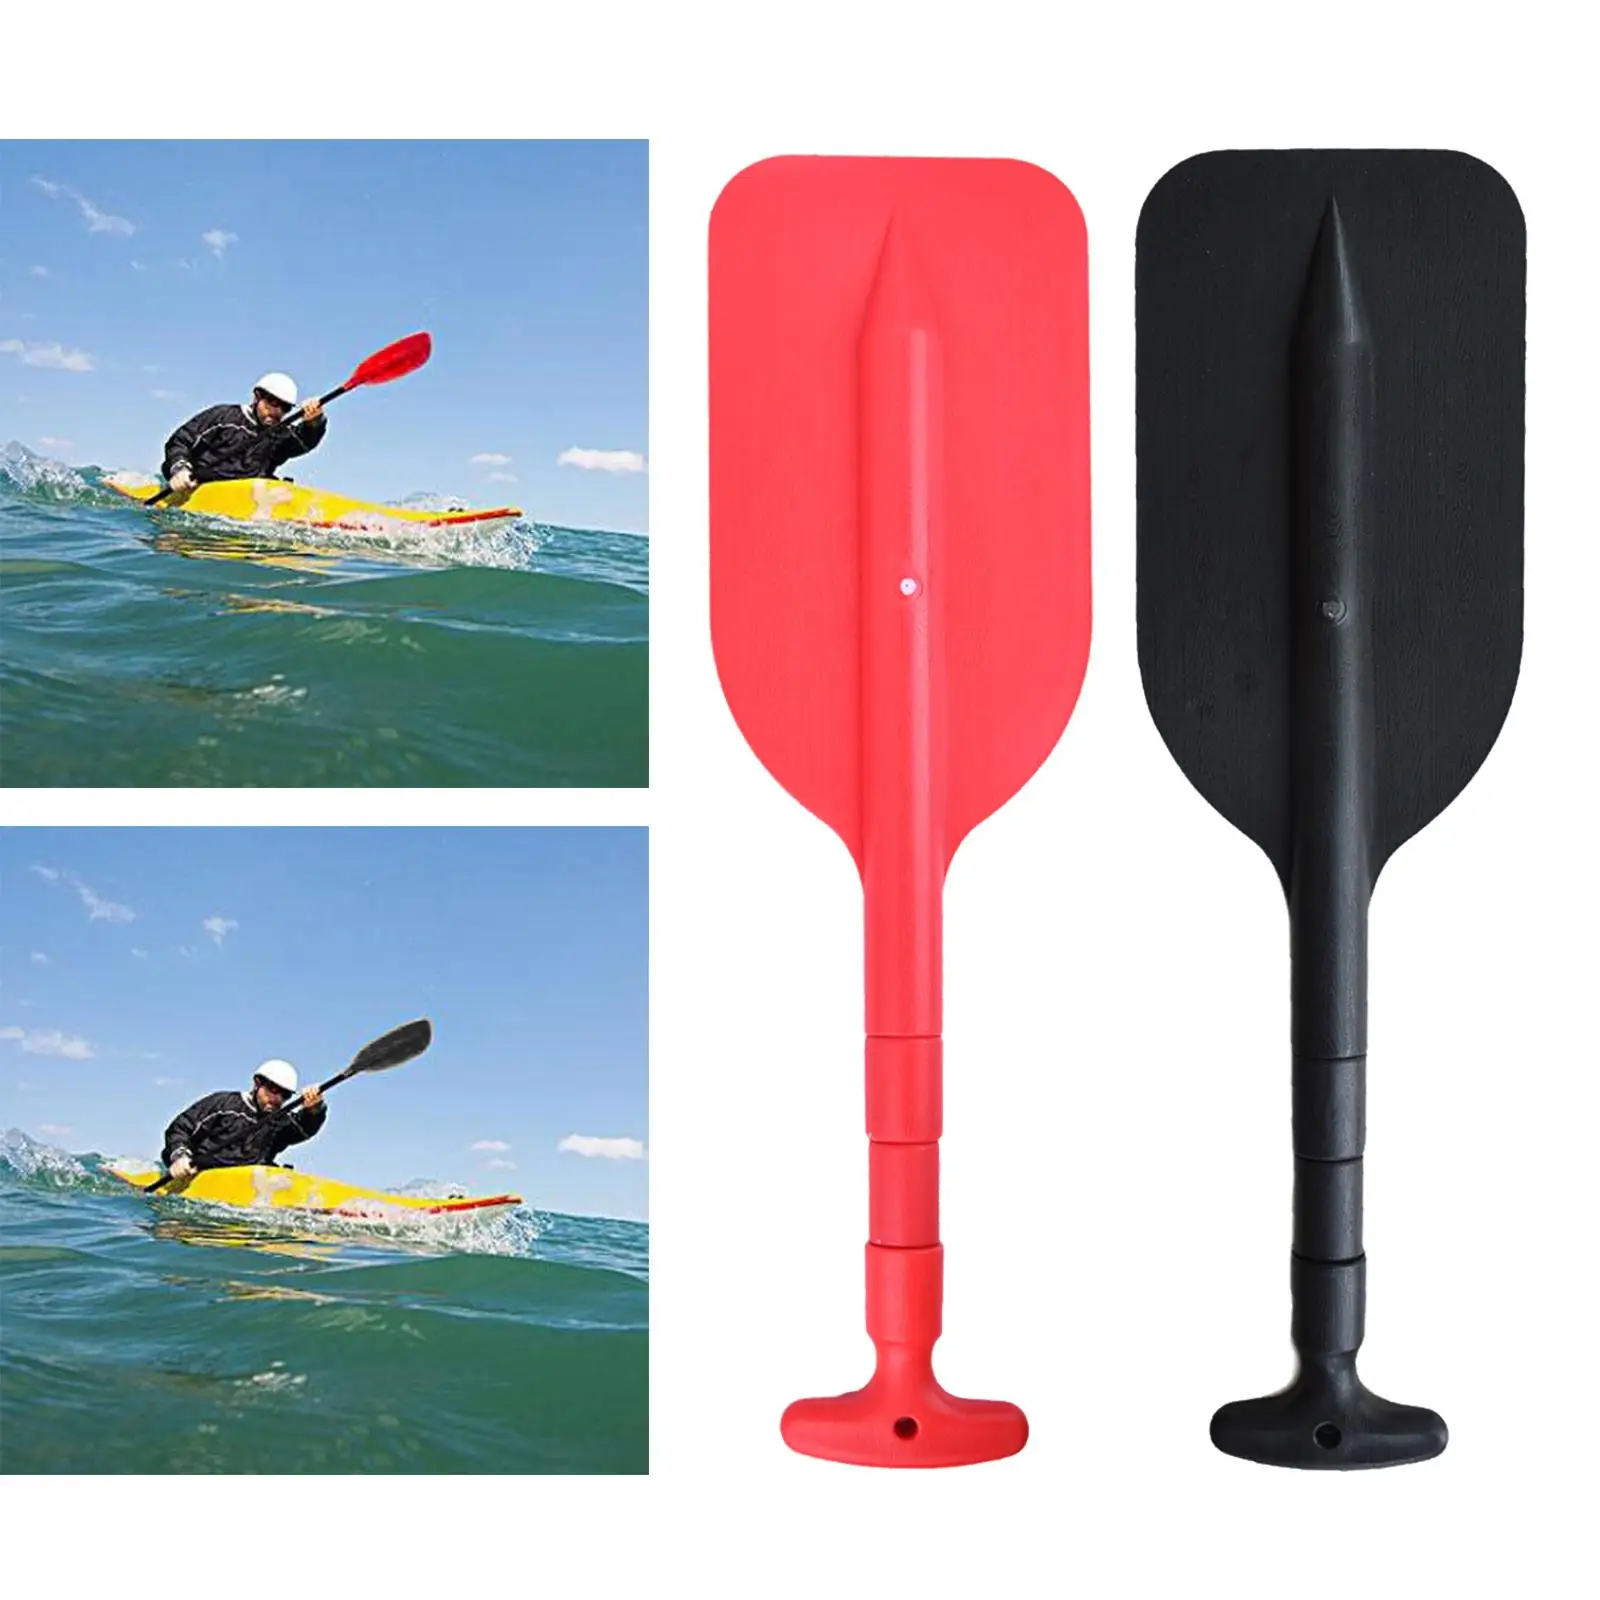 Folding PVC MIni Kayak Paddle Oar Lightweight Safety Boat Supply